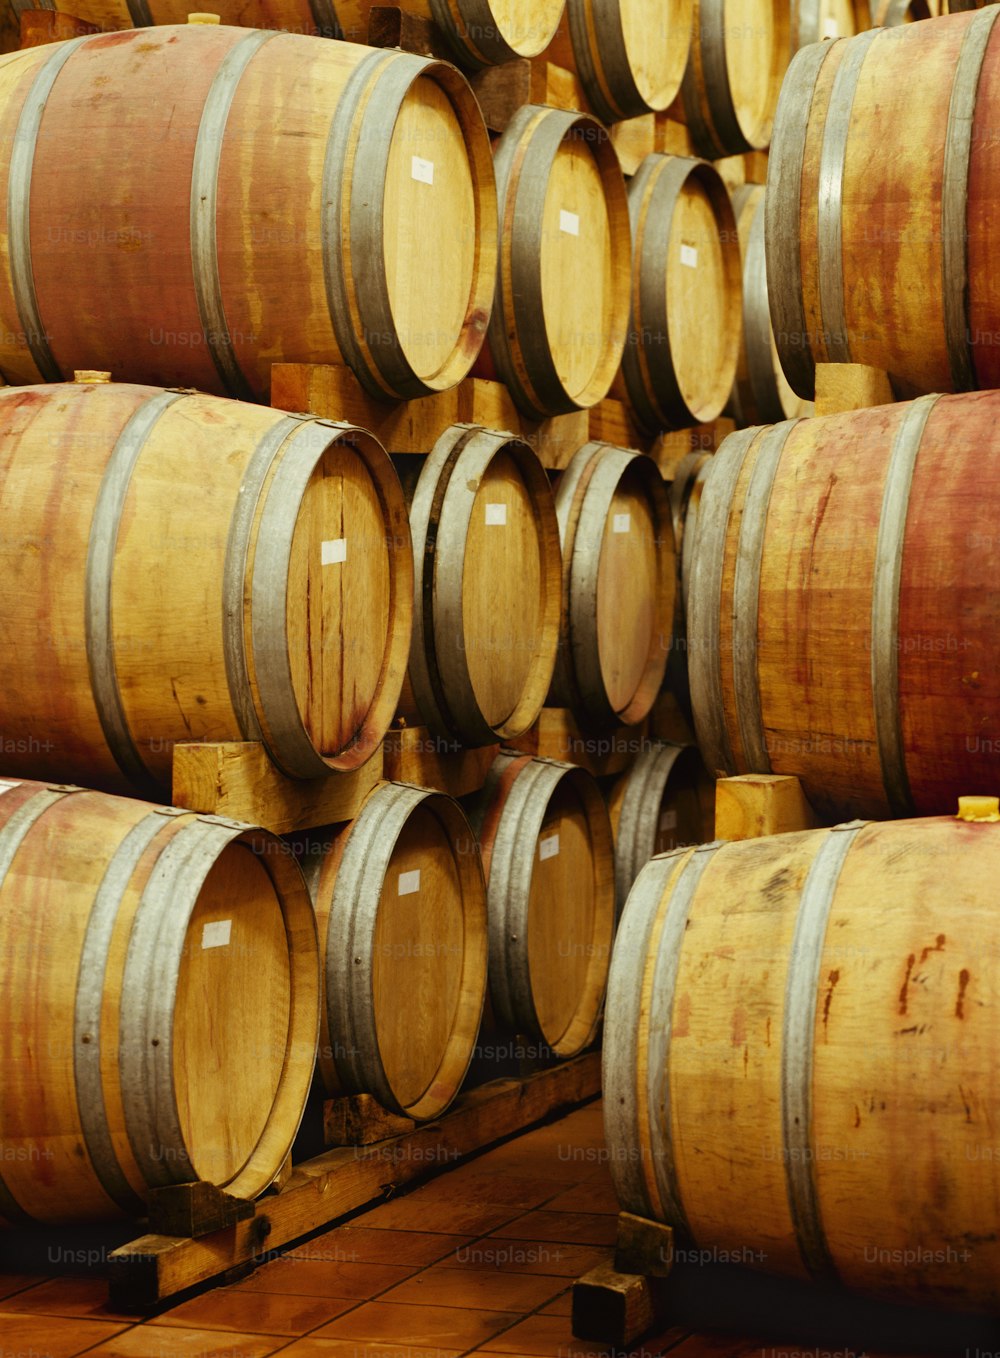 Un montón de barriles de vino apilados uno encima del otro